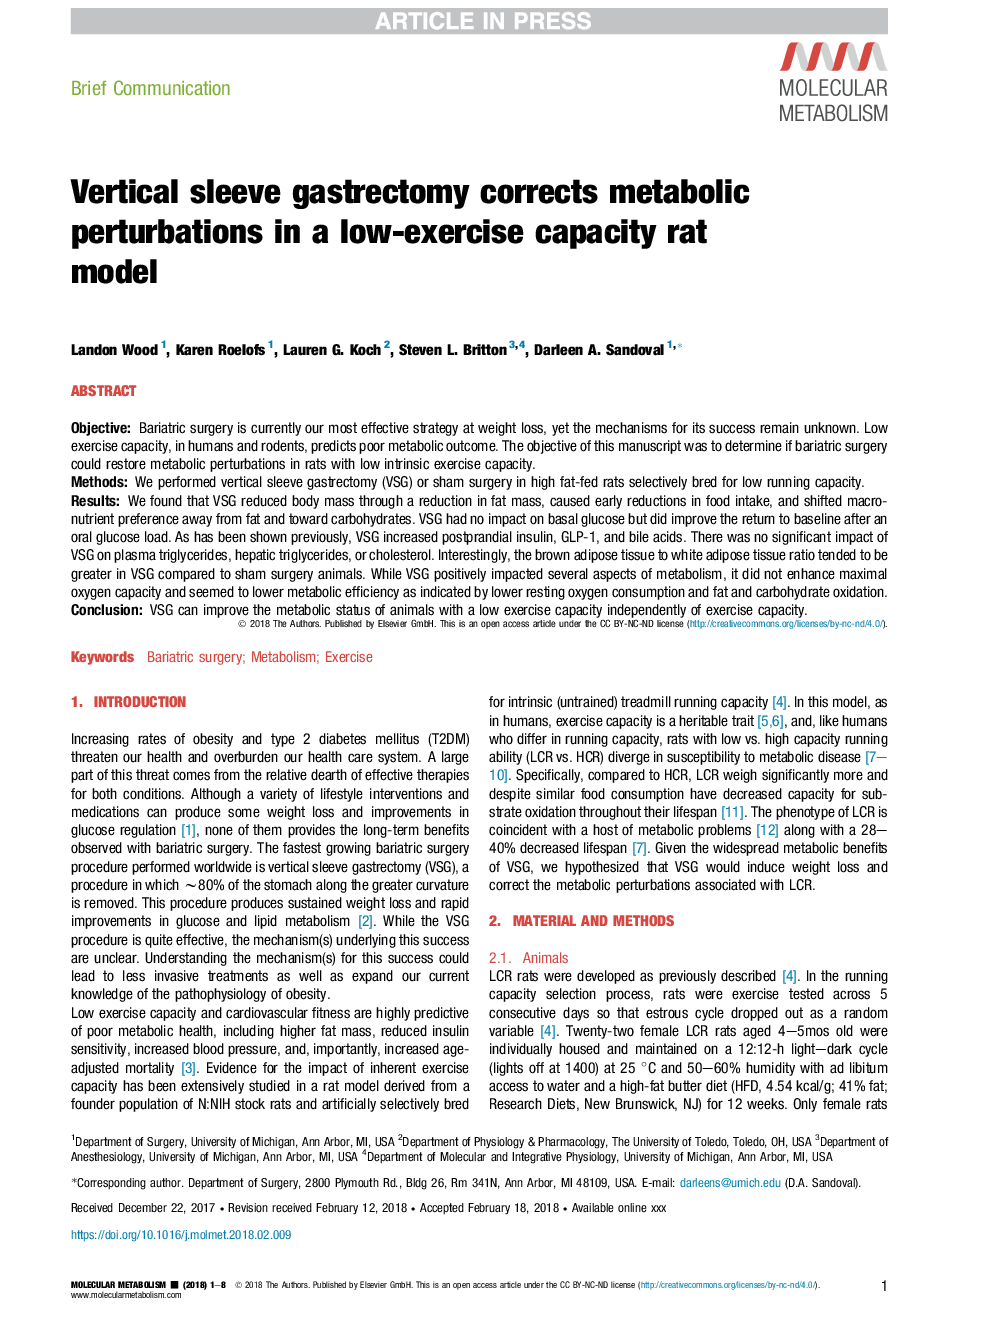 گاسترکتومی آستین عمودی باعث بروز اختلالات متابولیکی در یک مدل موش با توانایی کم تمرین می شود 